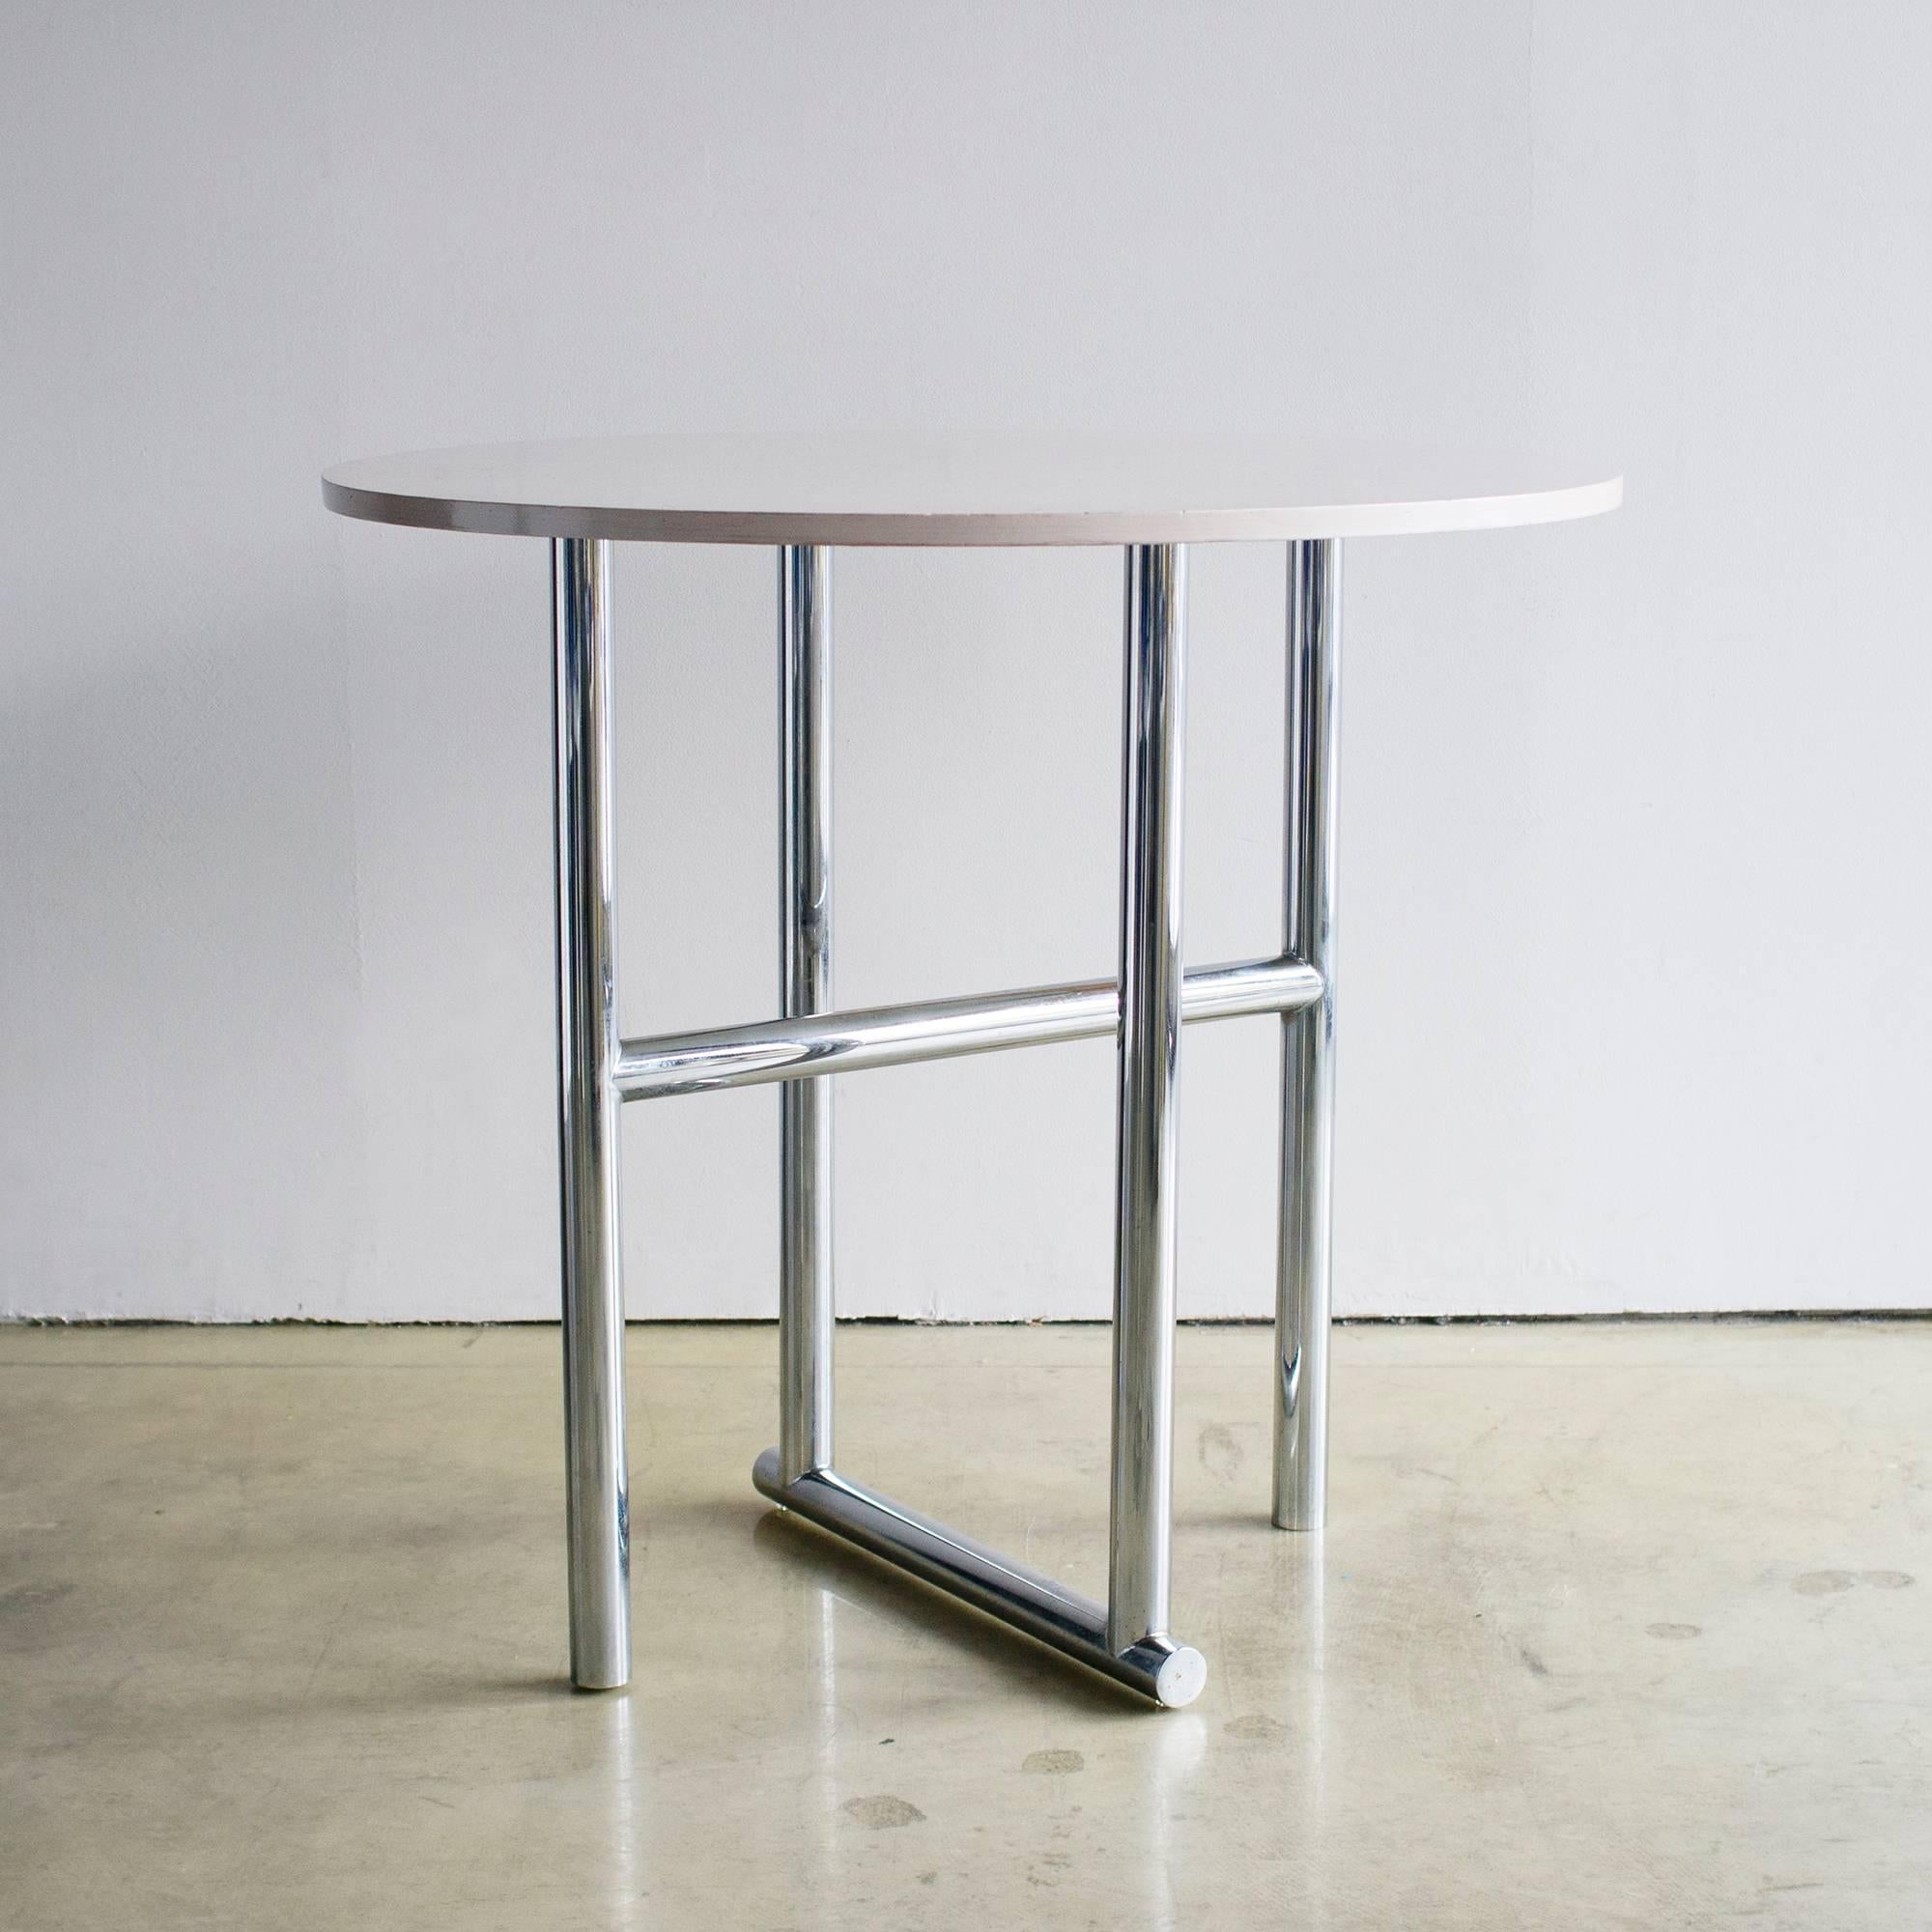 Tisch HAL1, entworfen von Shiro Kuramata für Cassina Interdecor im Jahr 1988. Einzigartige Stahlbeine und weiß lackierte Spanplatten.